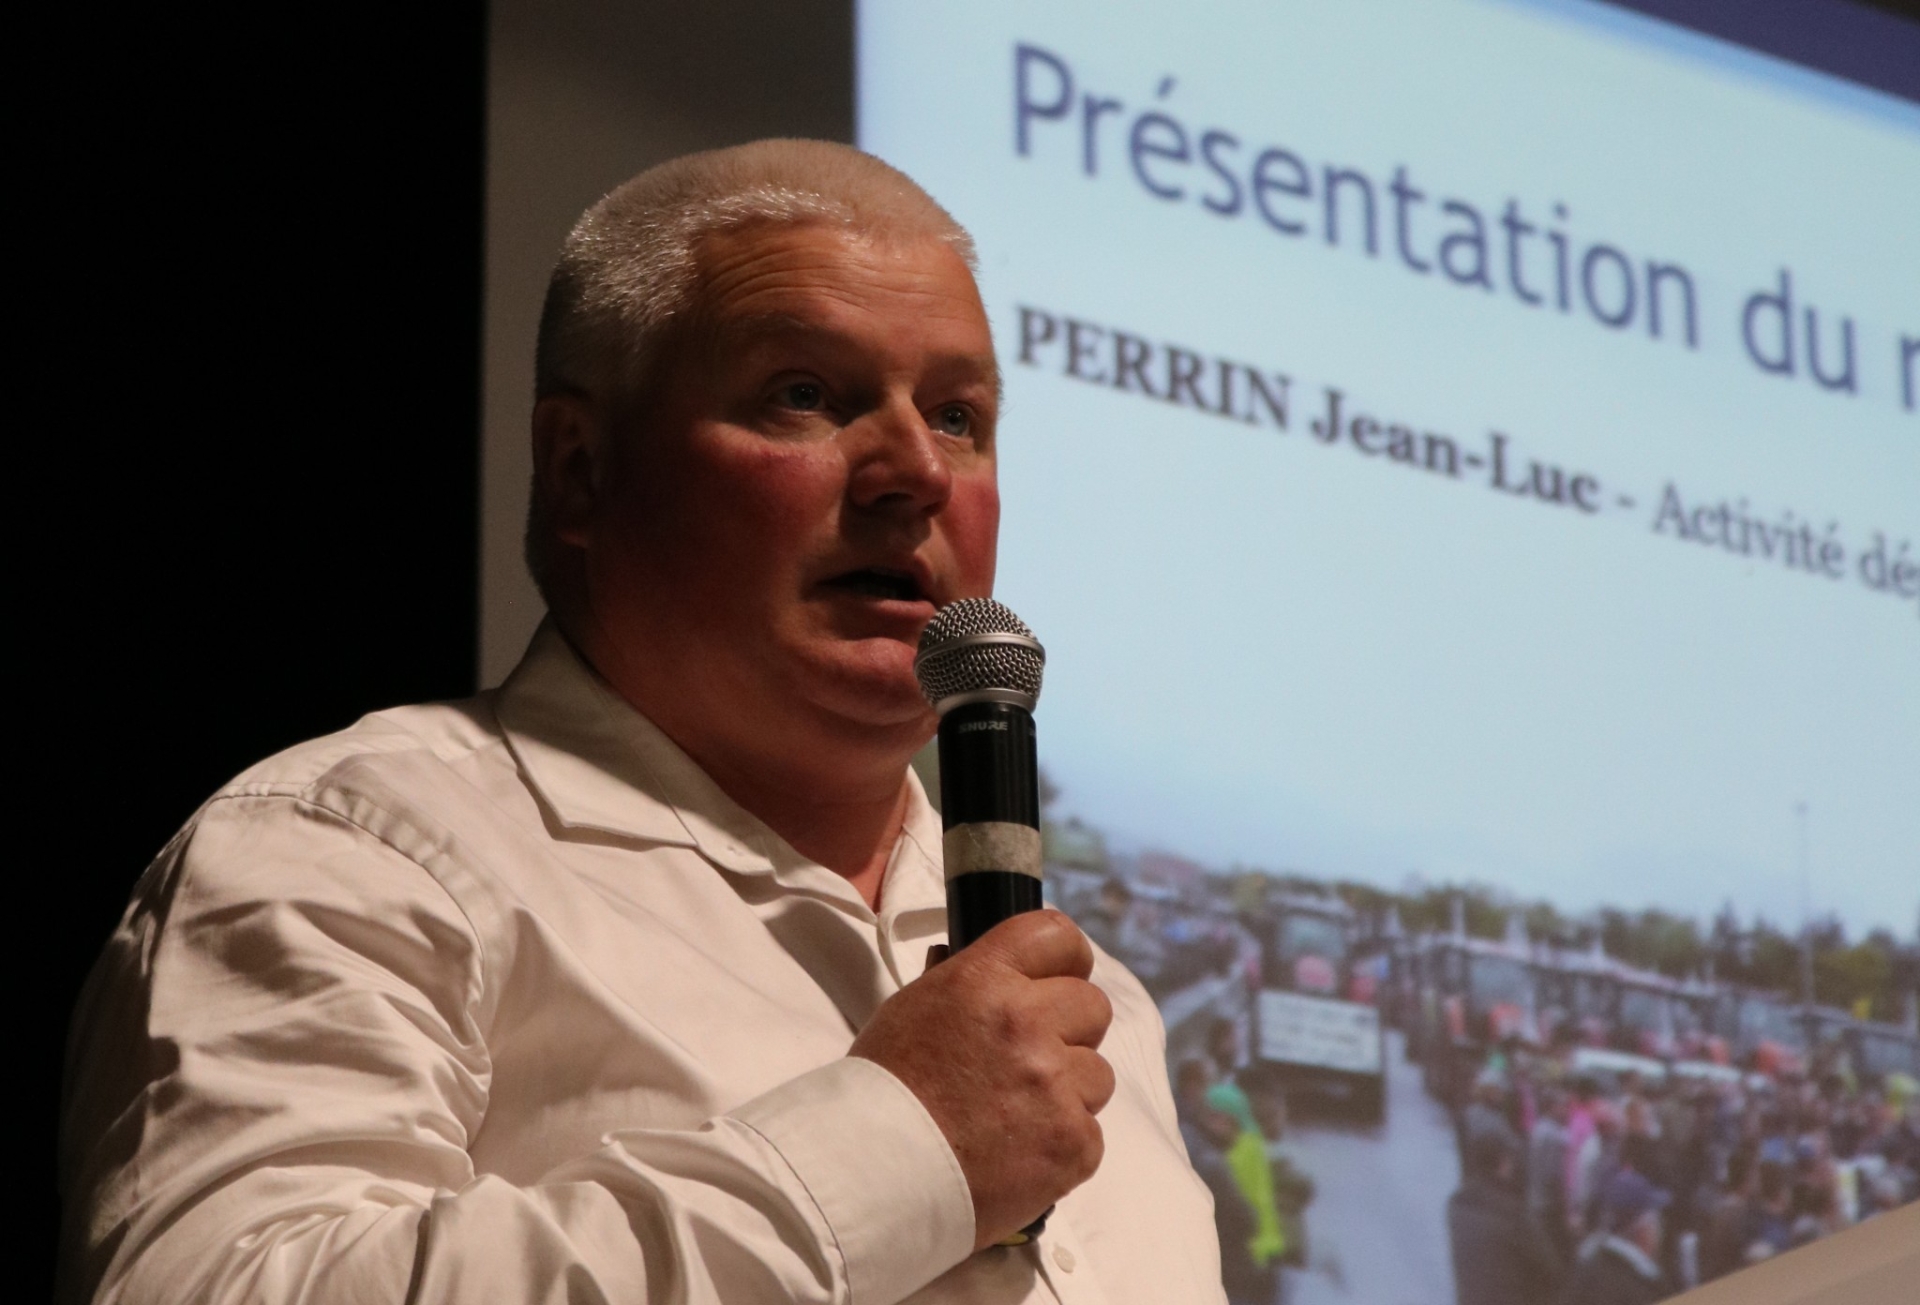 Jean-Luc Perrin, nouveau président